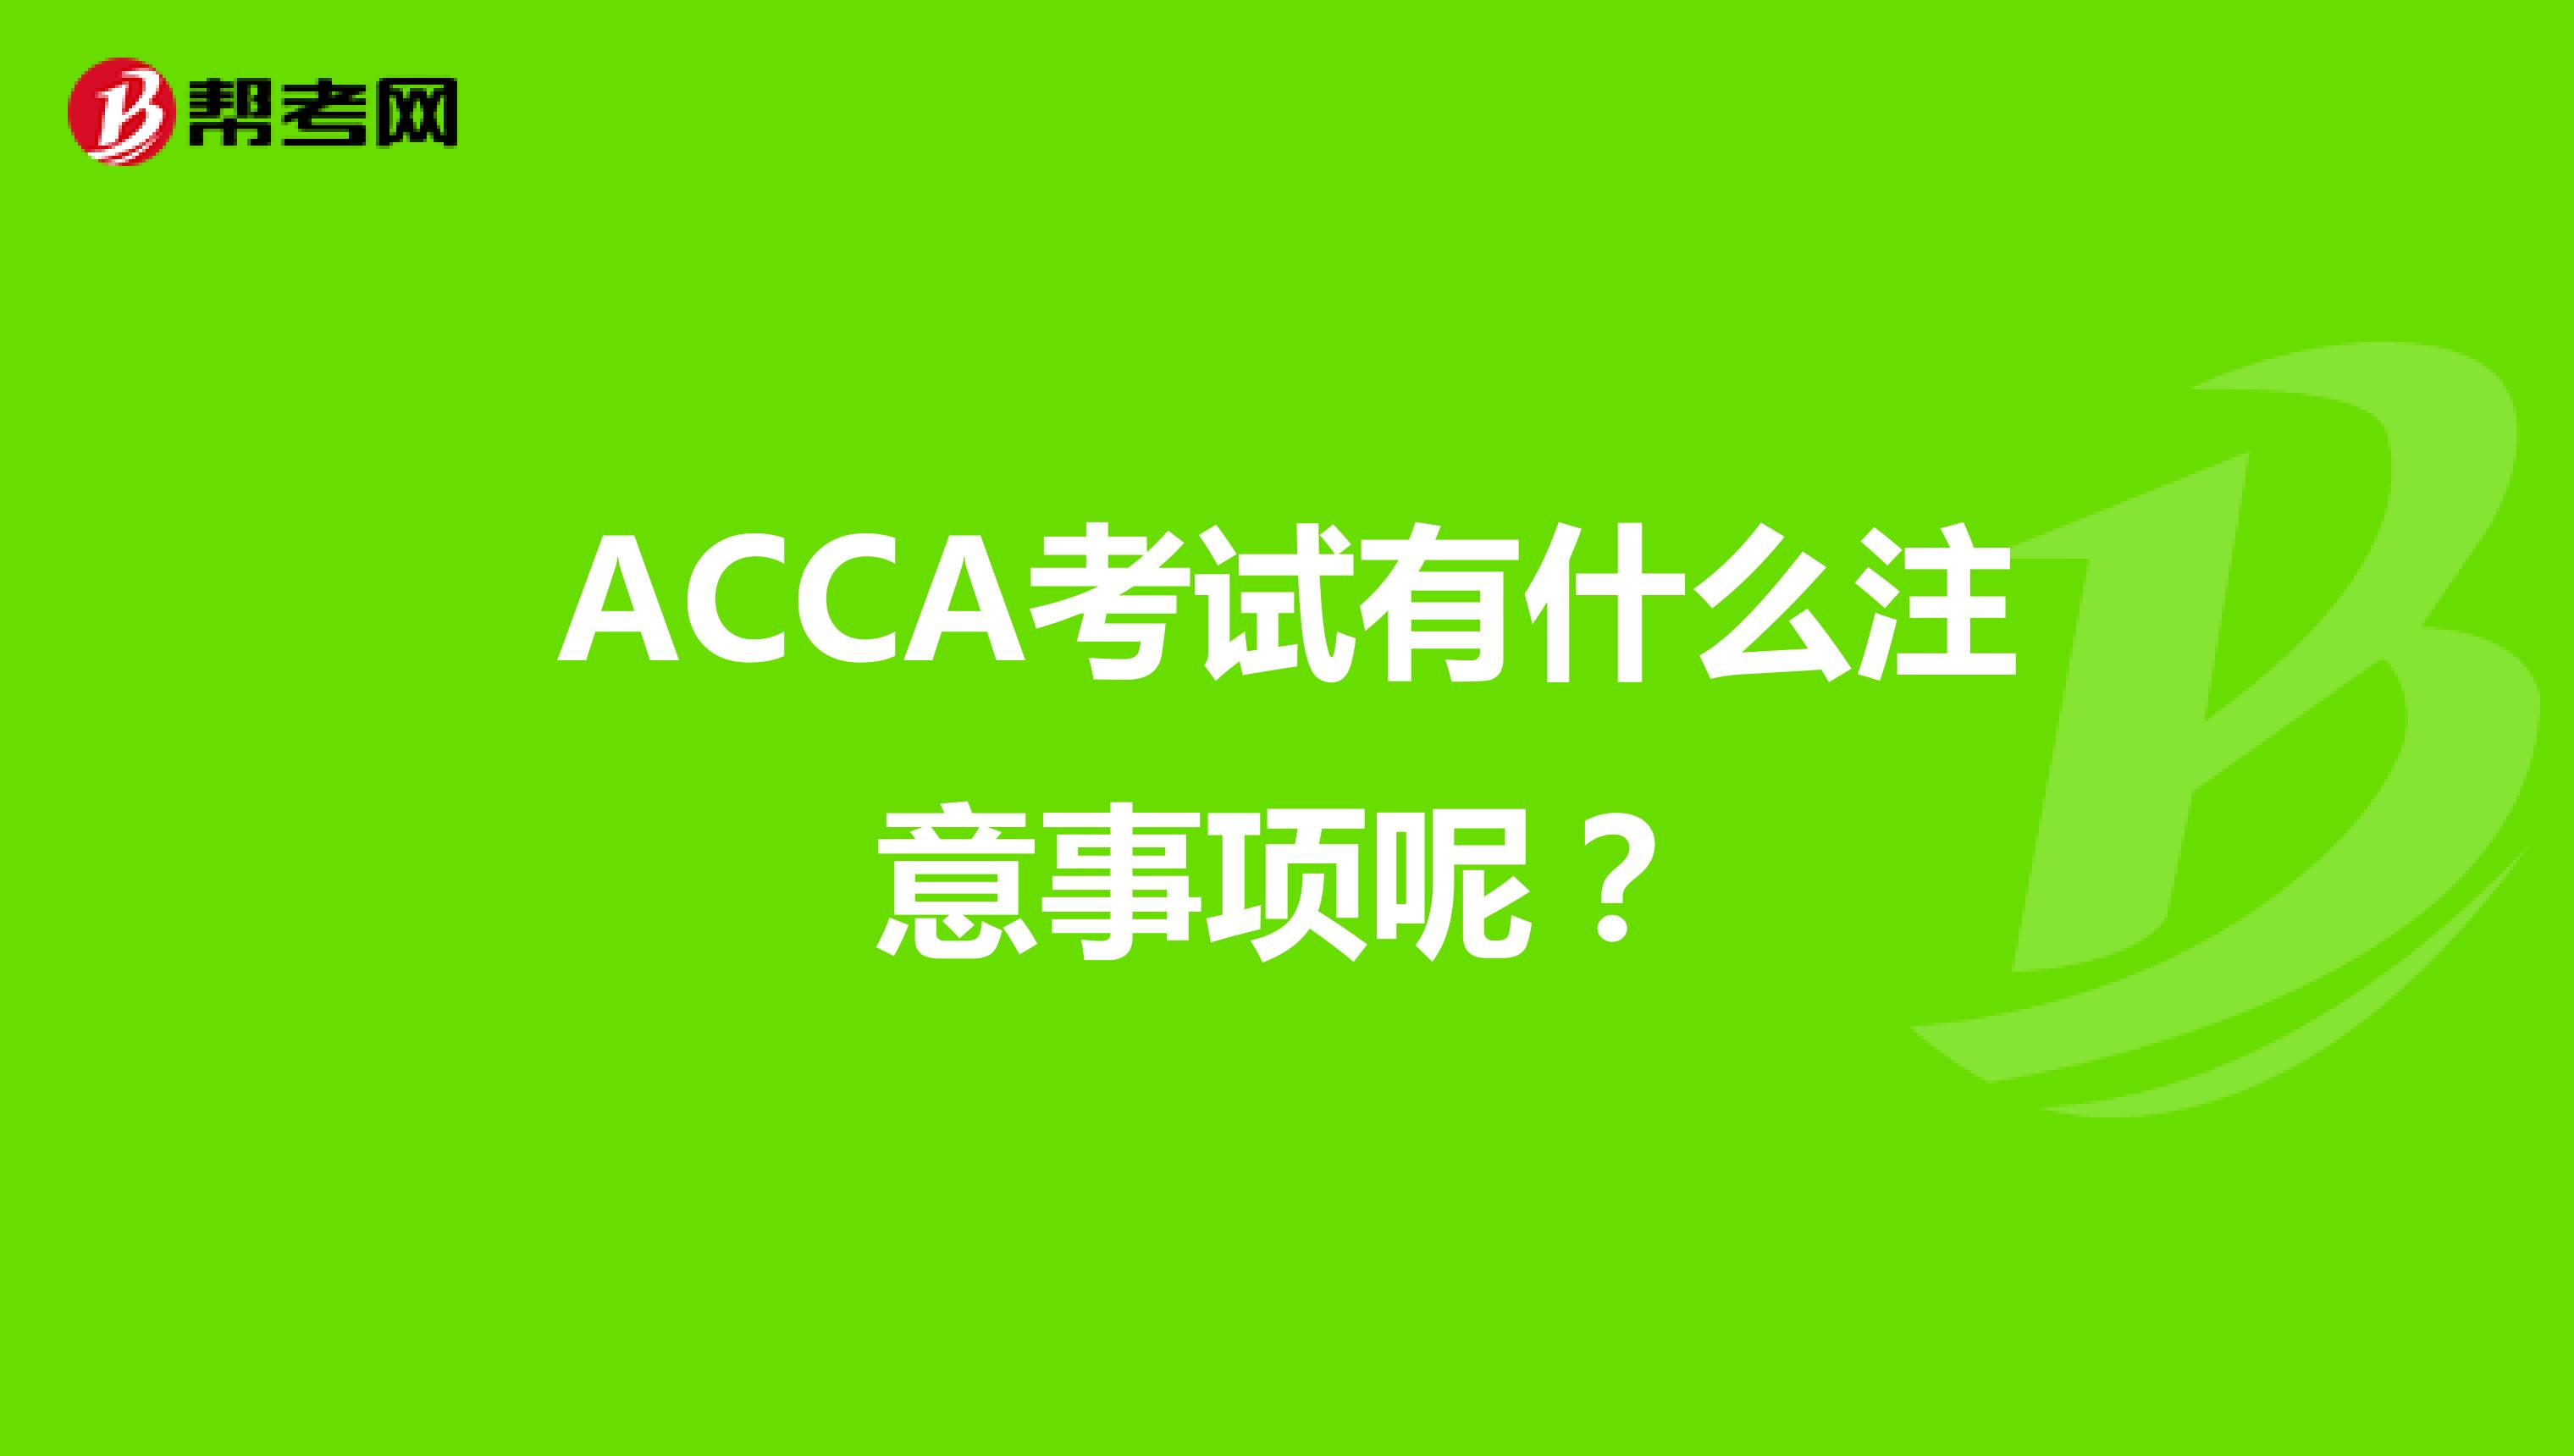 ACCA考试有什么注意事项呢？